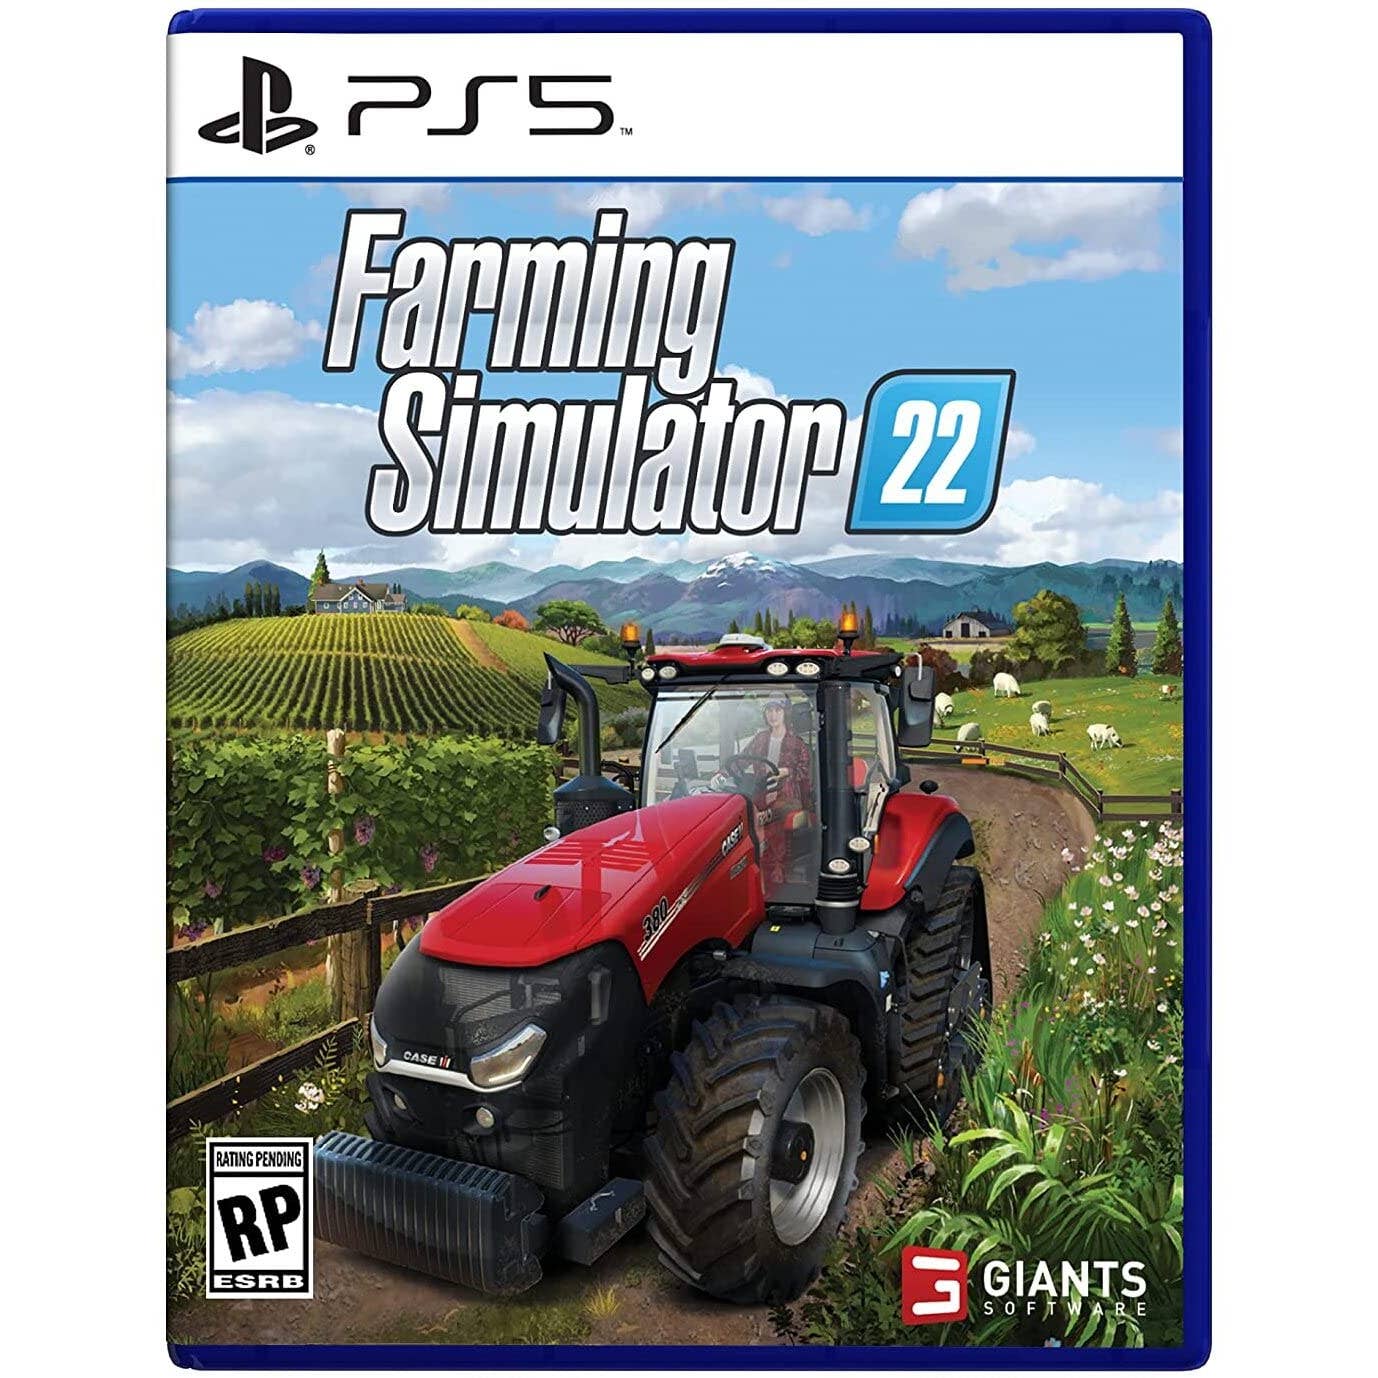 Landwirtschafts-Simulator 22 (Premium Edition) PS4 - bei expert kaufen